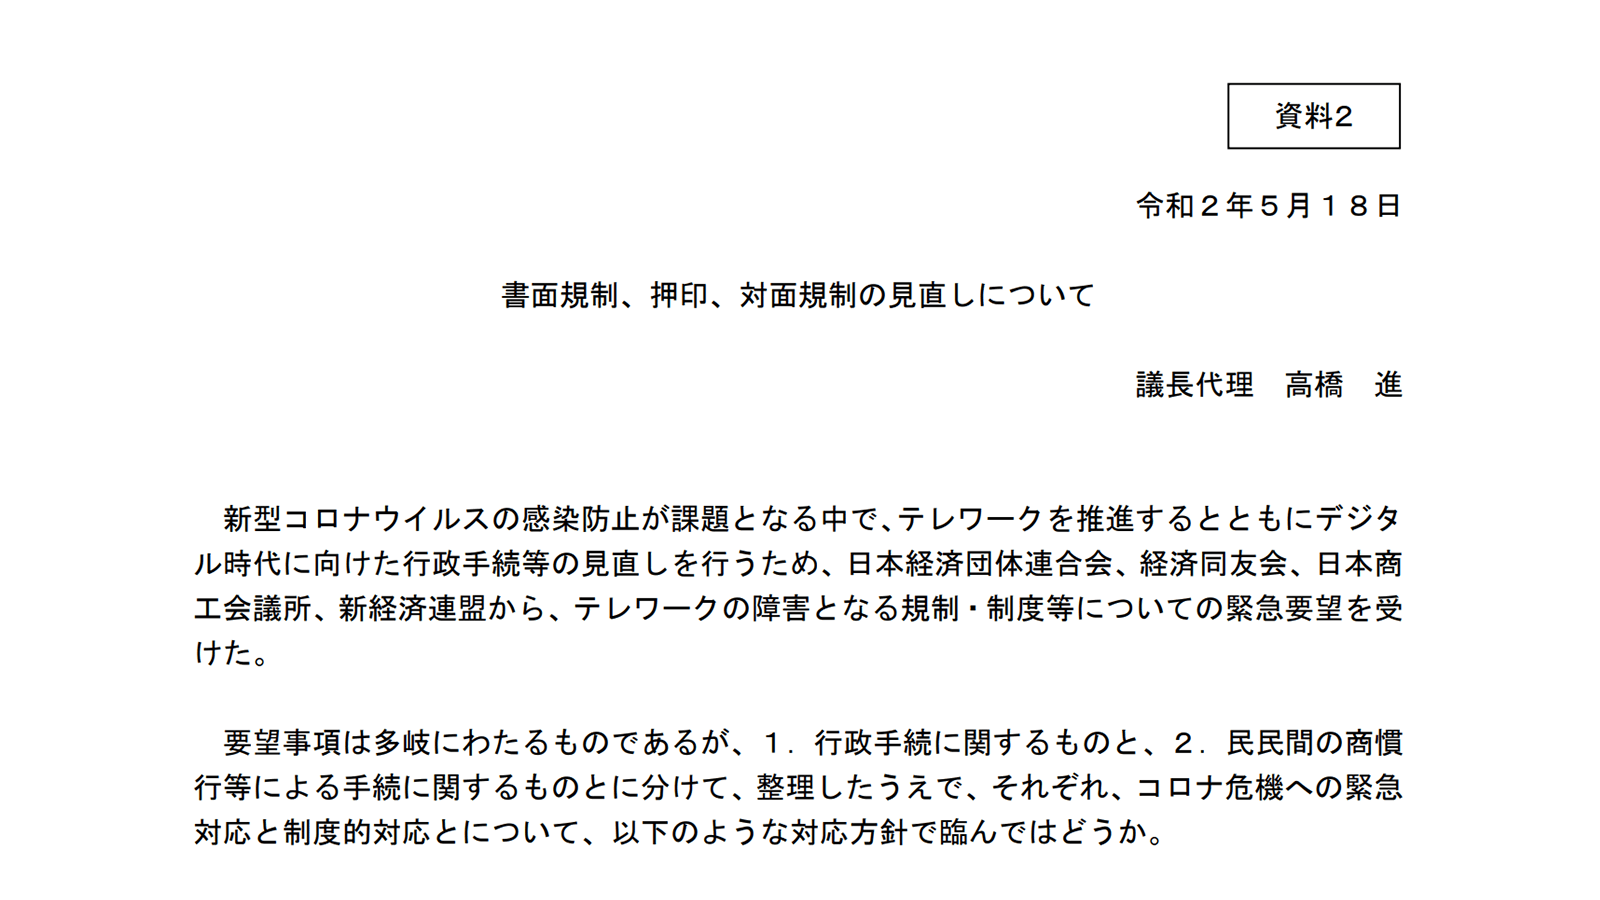 https://www8.cao.go.jp/kisei-kaikaku/kisei/meeting/committee/20200518/200518honkaigi02.pdf  2020年5月22日最終アクセス